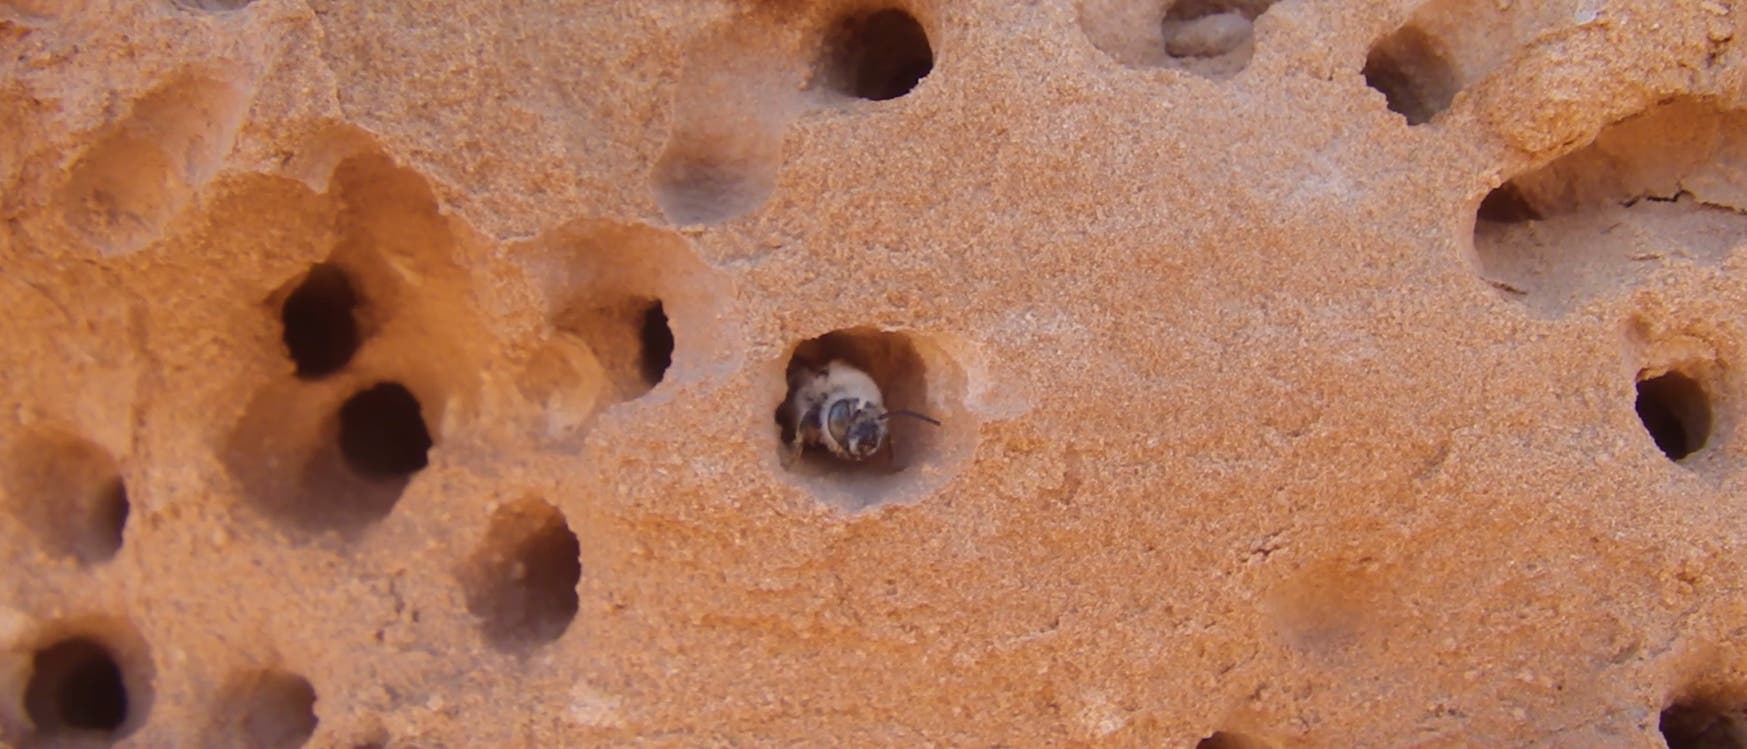 Biene guckt aus einer durchlöcherten Wand